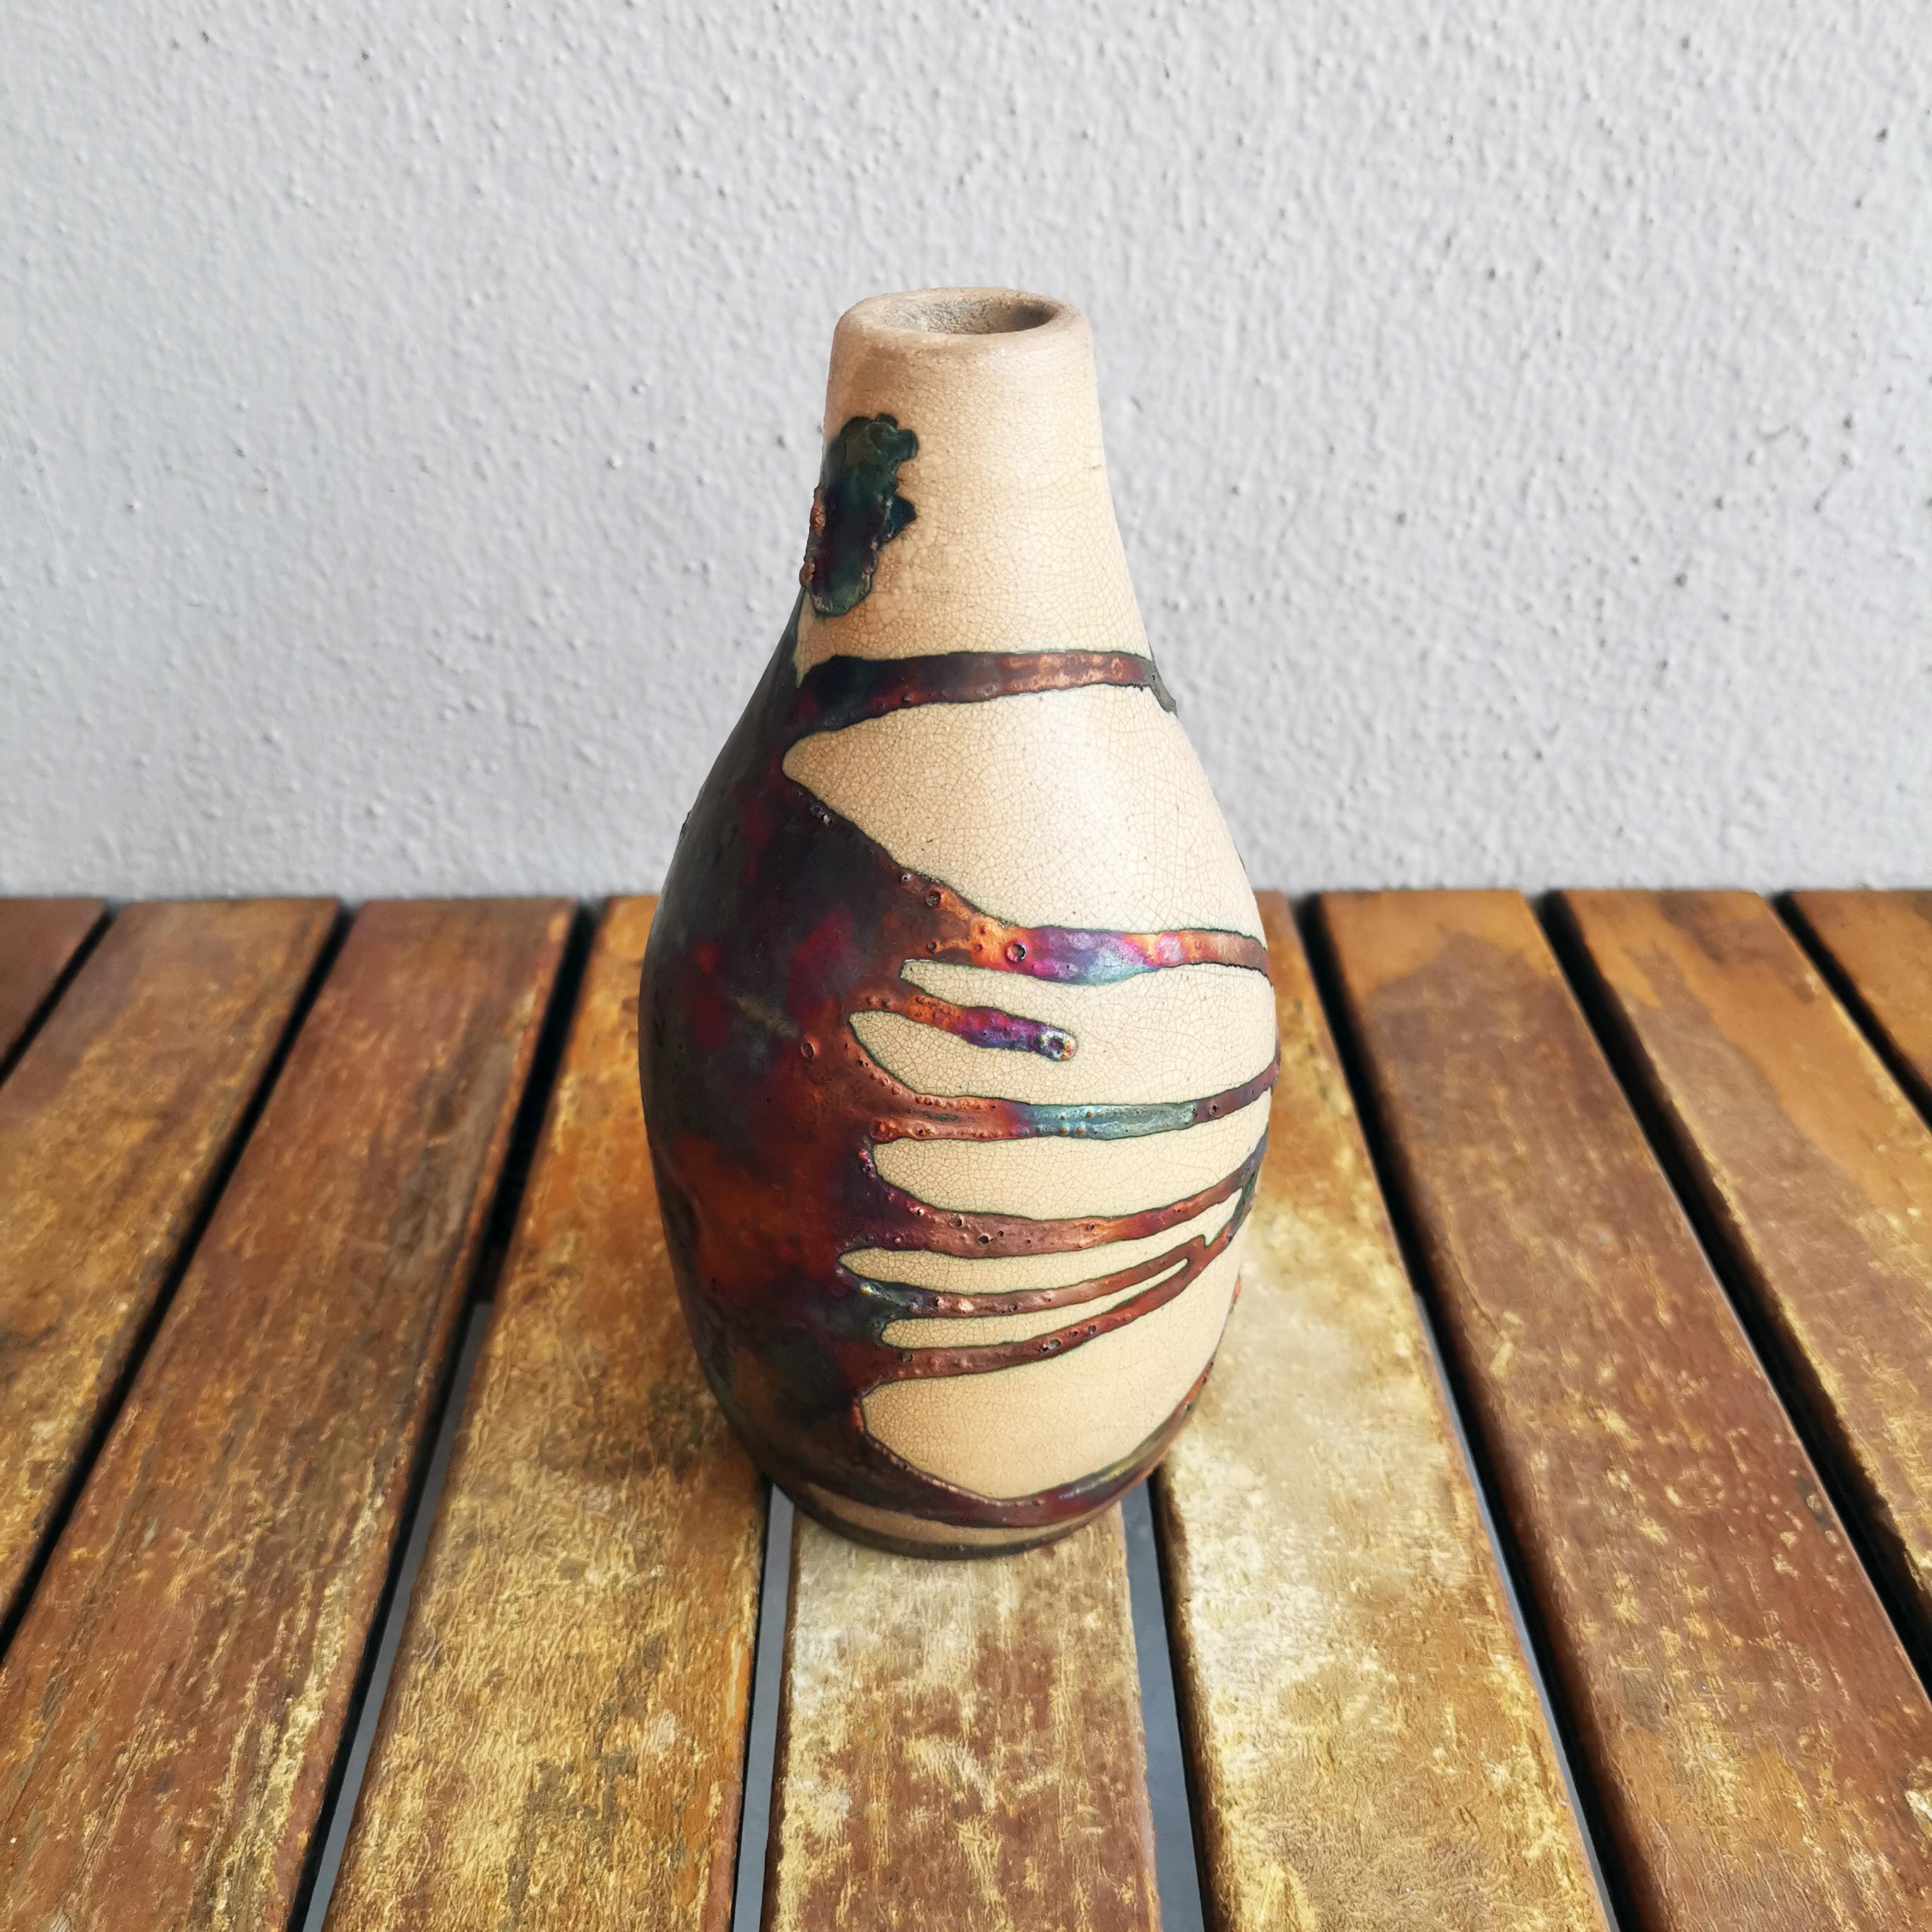 Natsu ( 夏 ) ~ (n) Sommer

Unsere Vase Natsu ist fast wie eine Limonadenflasche geformt und weckt Erinnerungen an den Sommer, wenn es heiß ist und man am liebsten nur noch eiskalte Limonade trinken würde.

Dieses Stück würde sehr gut zu unserer